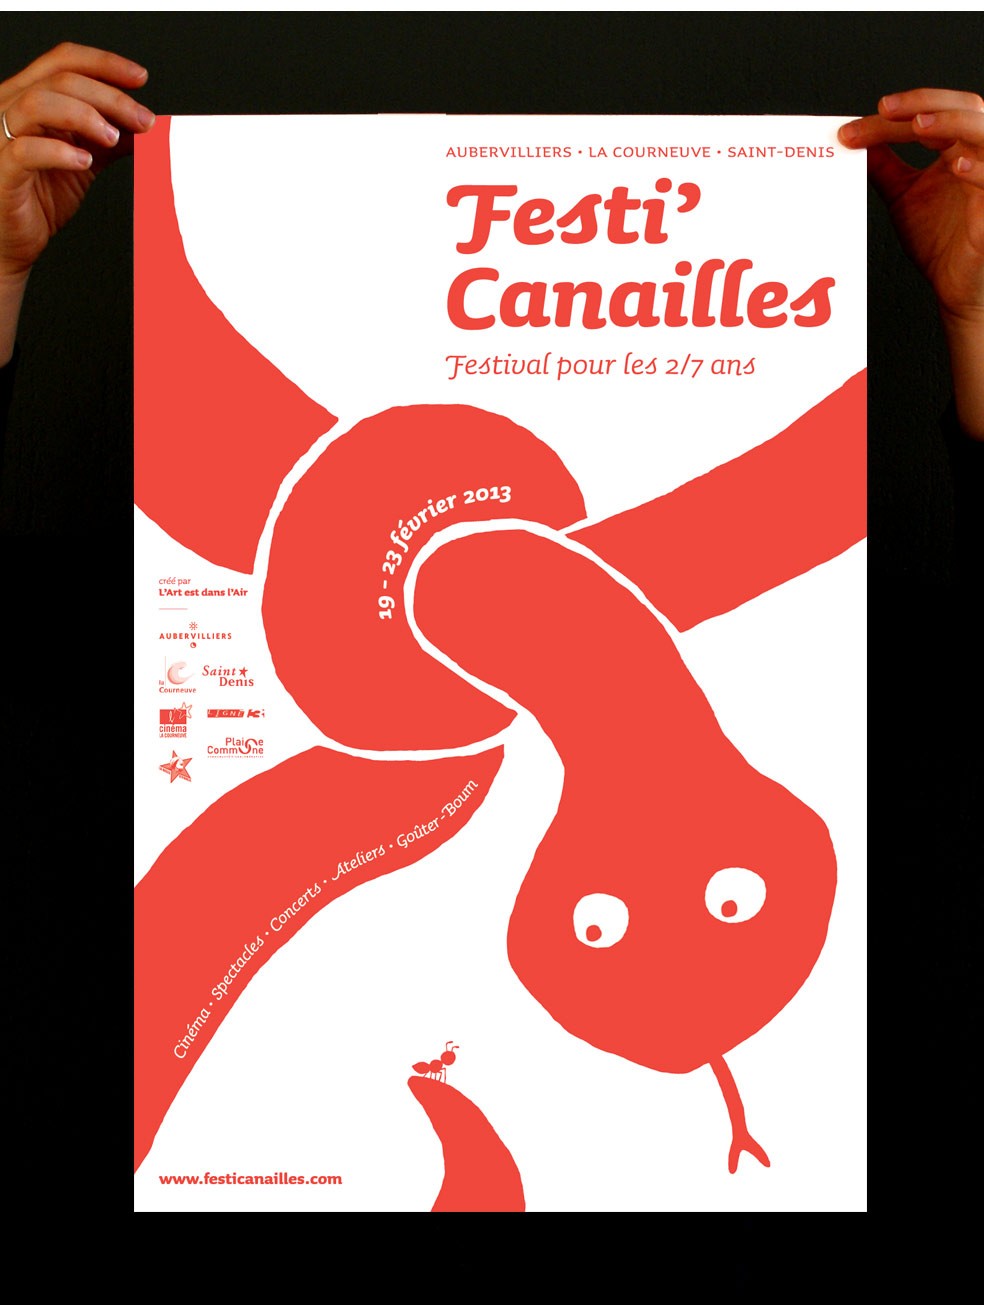 festi-canailles_2012-2014_04-4a2067c937c4f0e1ae88c1d268ed3812